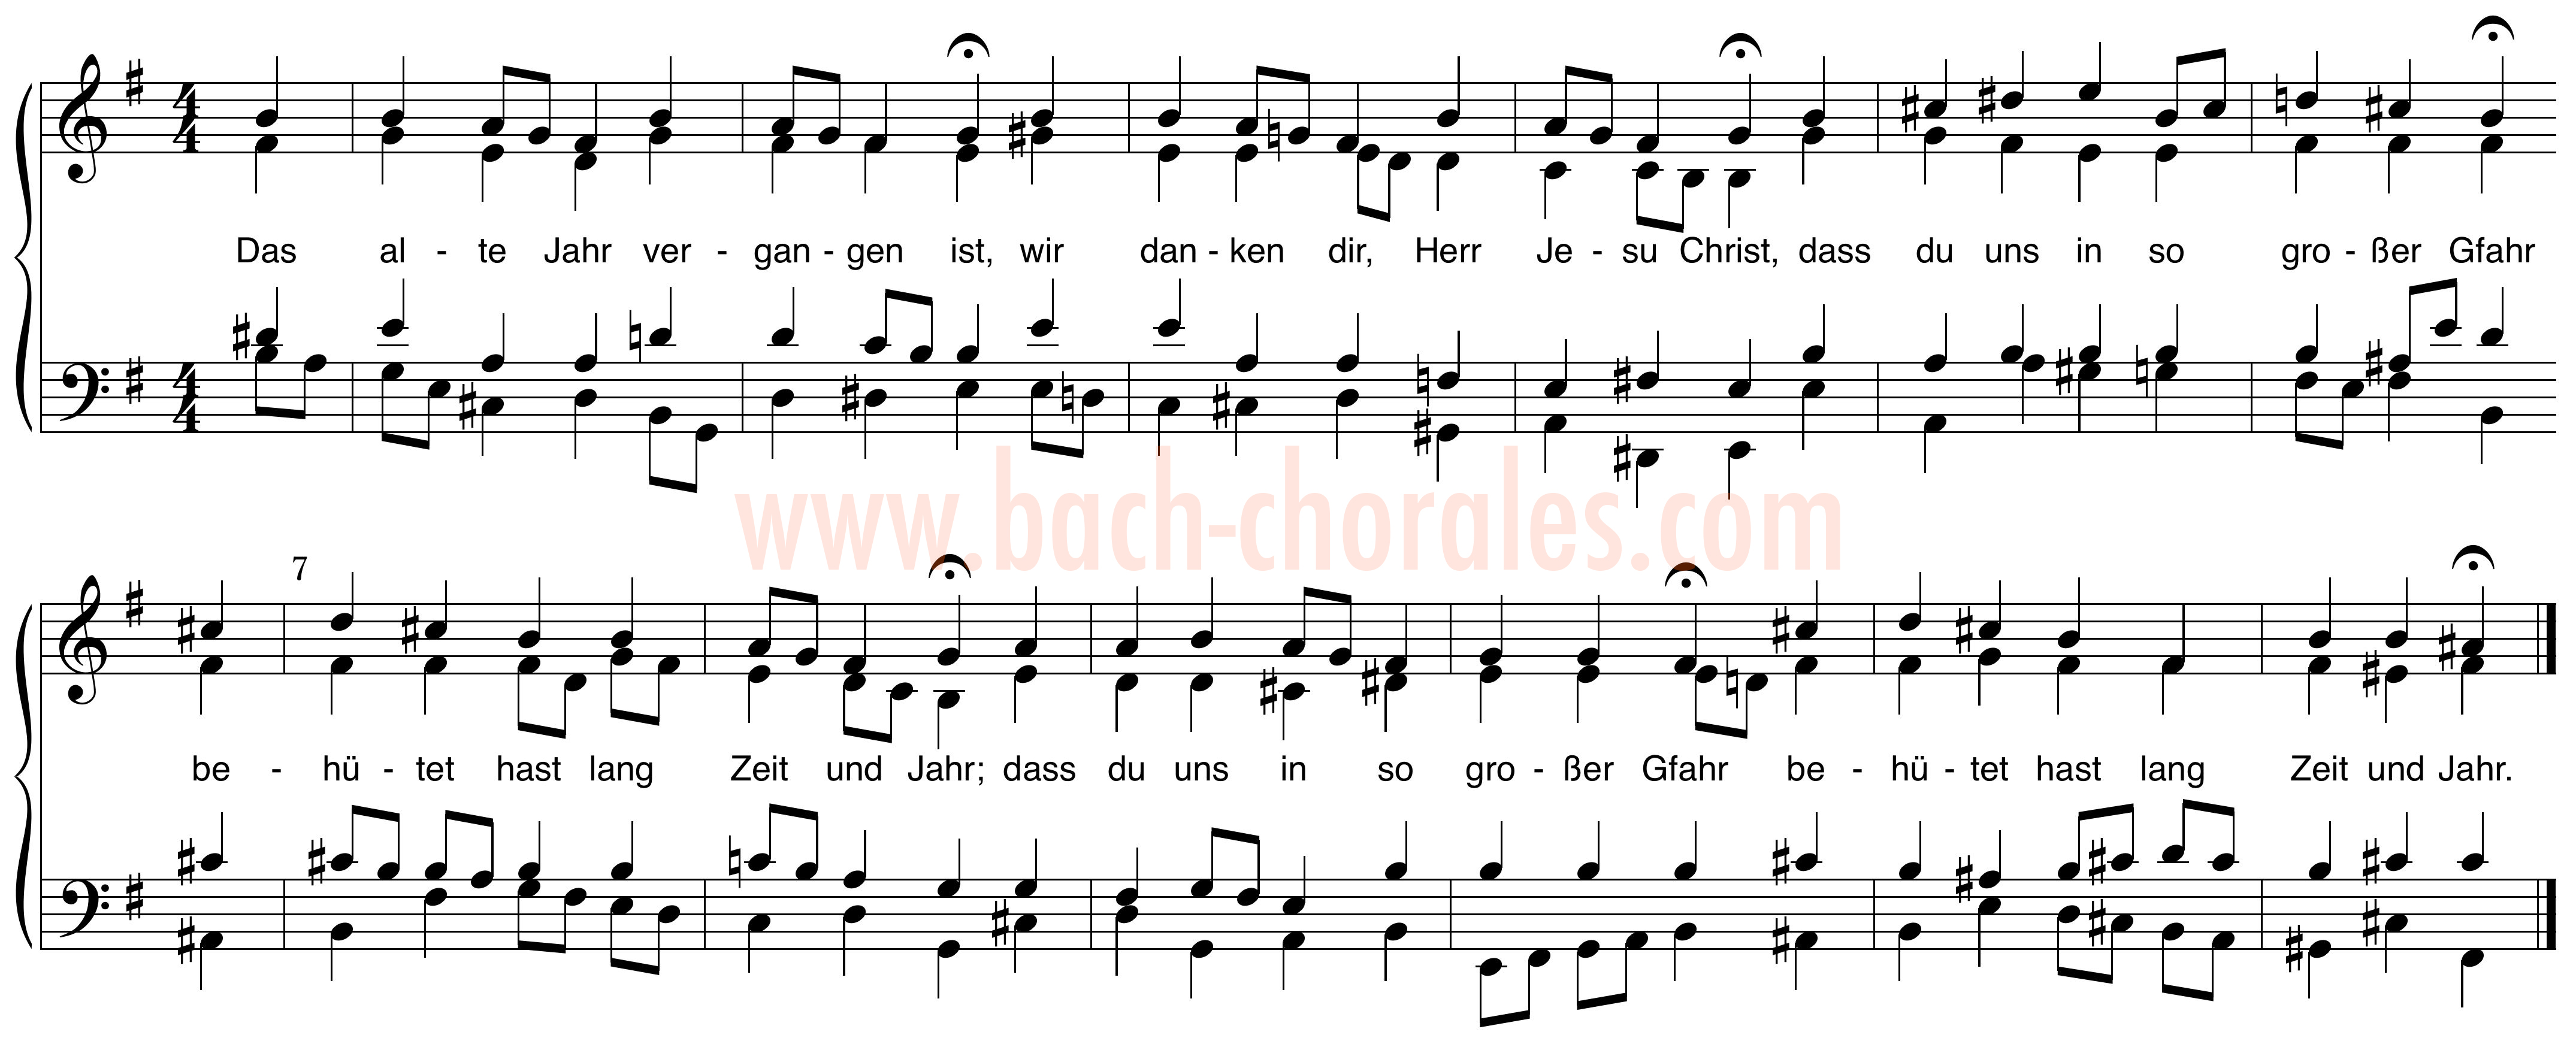 notenbeeld BWV 289 op https://www.bach-chorales.com/